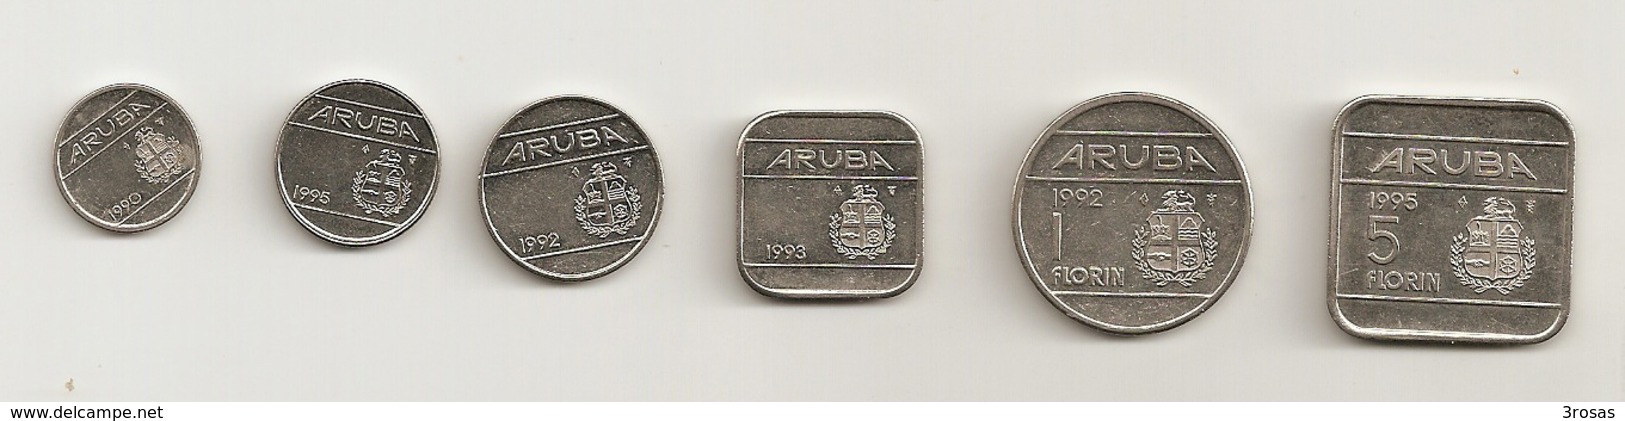 Aruba Collection Coins Good Condition - Aruba